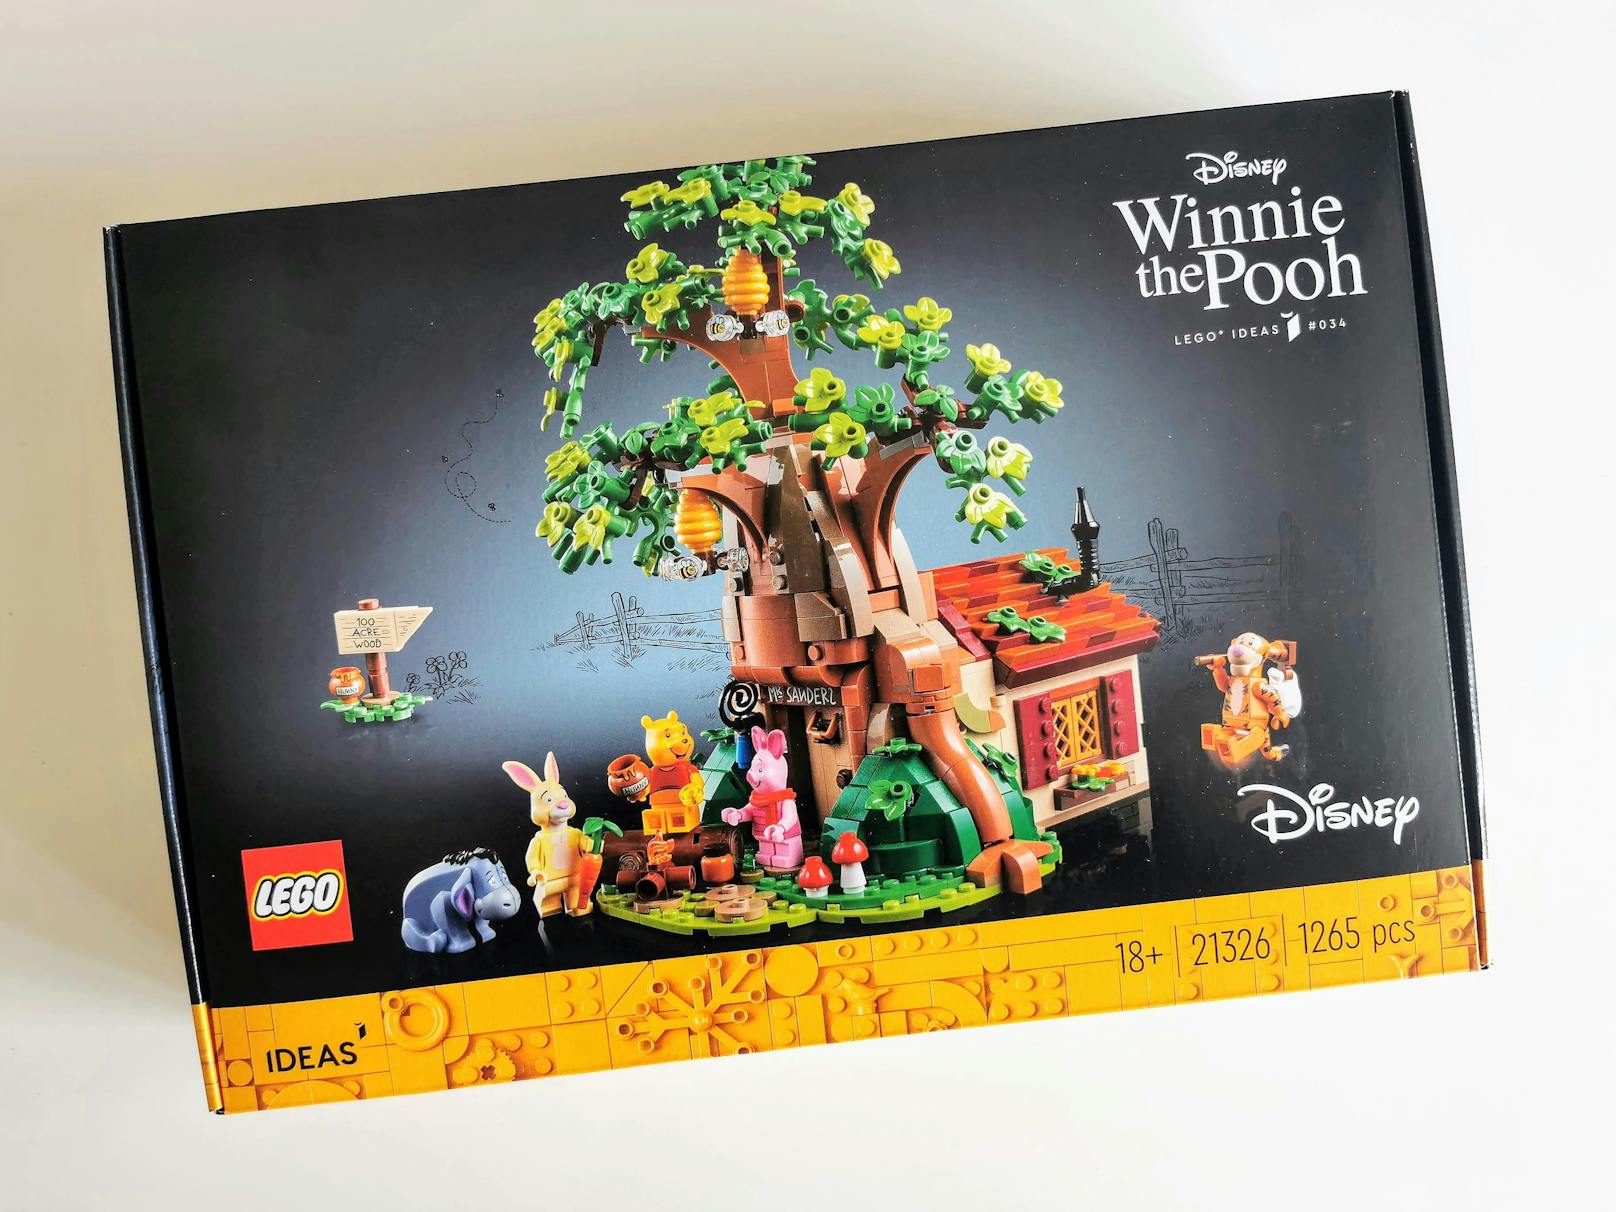 Mit dem neuen LEGO Ideas Set geht es mitten hinein in ein Abenteuer mit Winnie Puuh und seinen tierischen Freunden und einem ganzen Baumhaus.